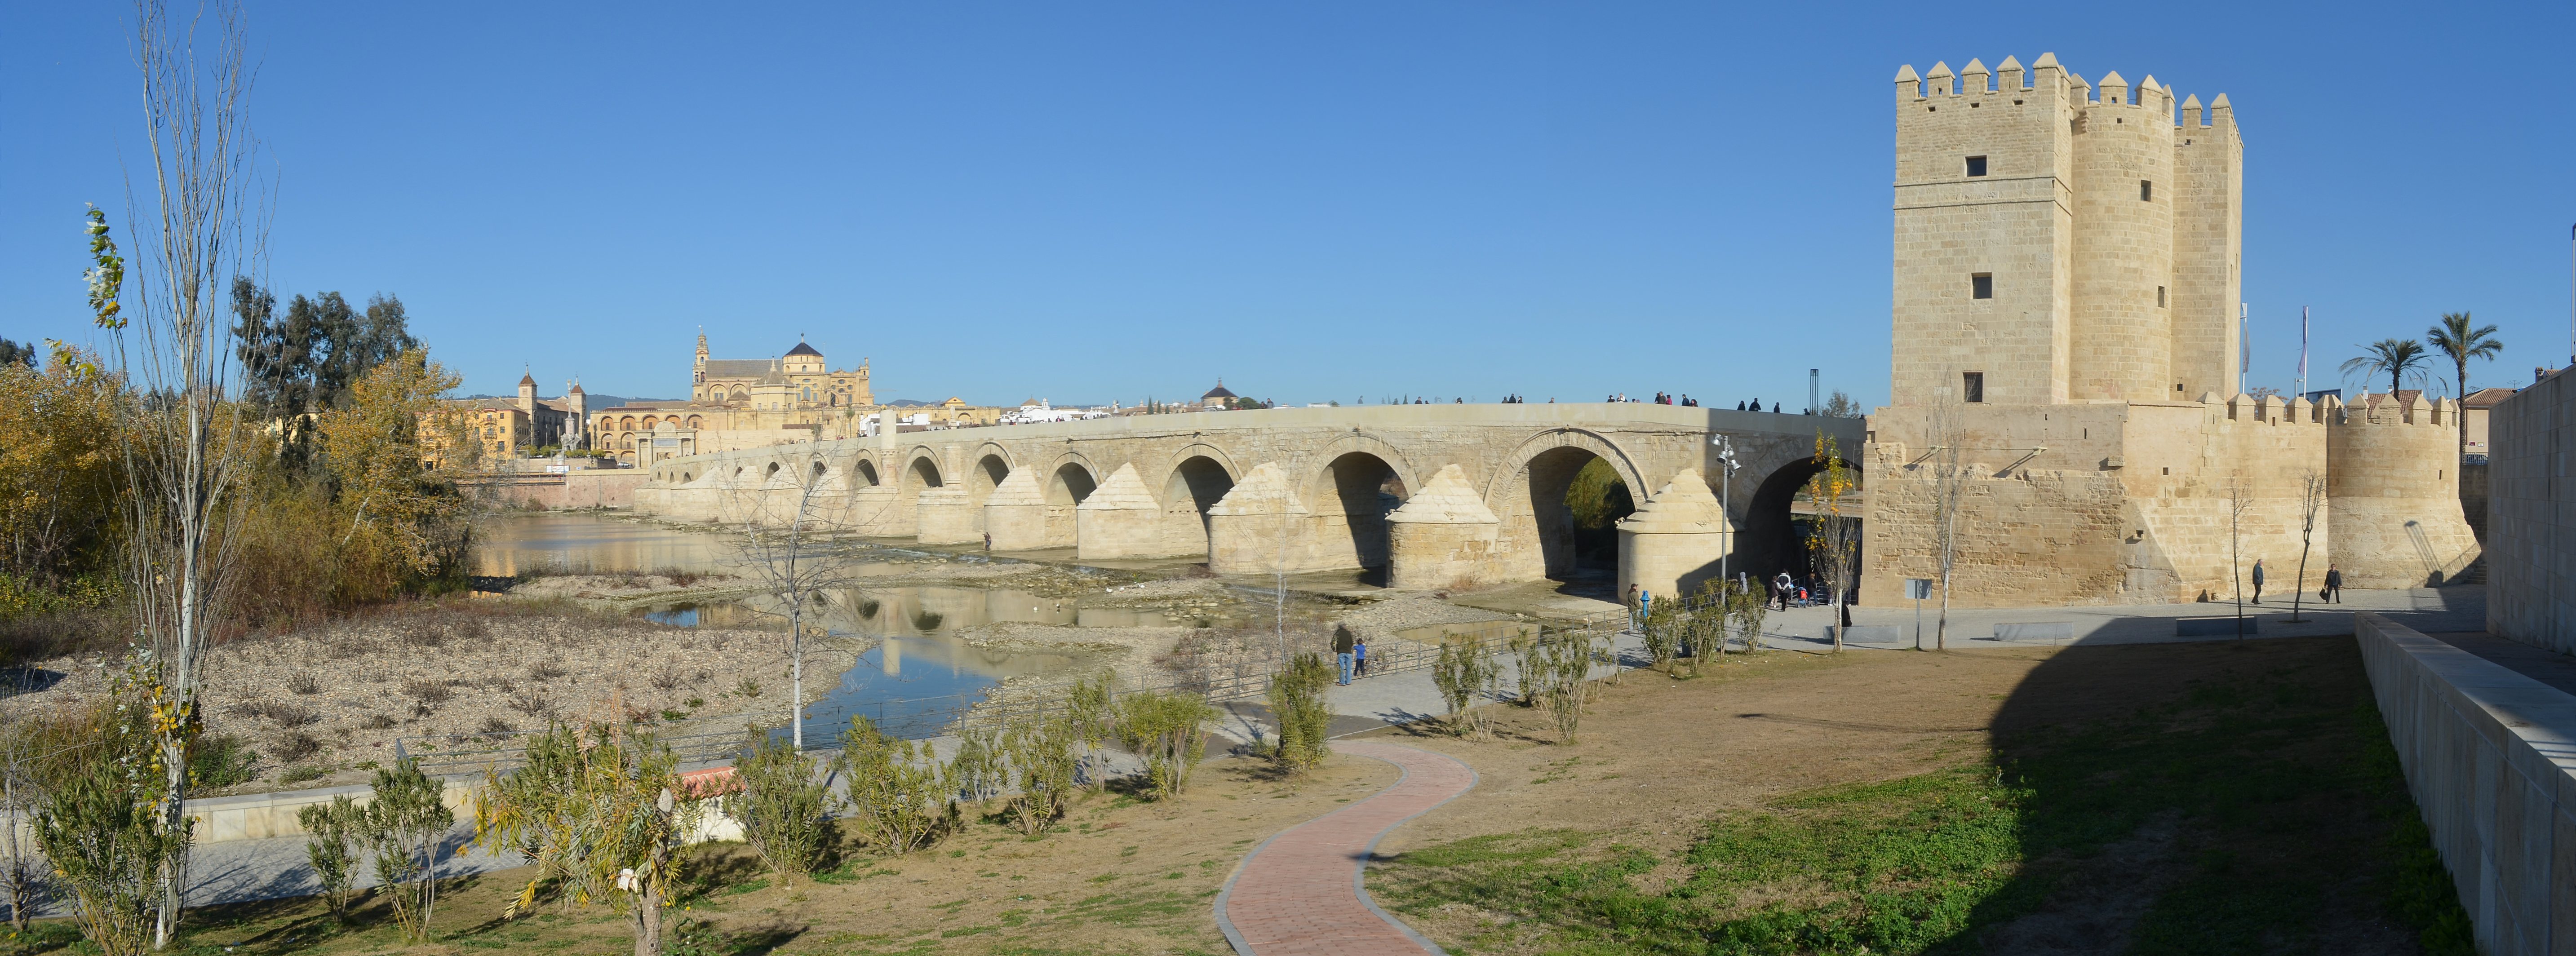 2019古罗马桥